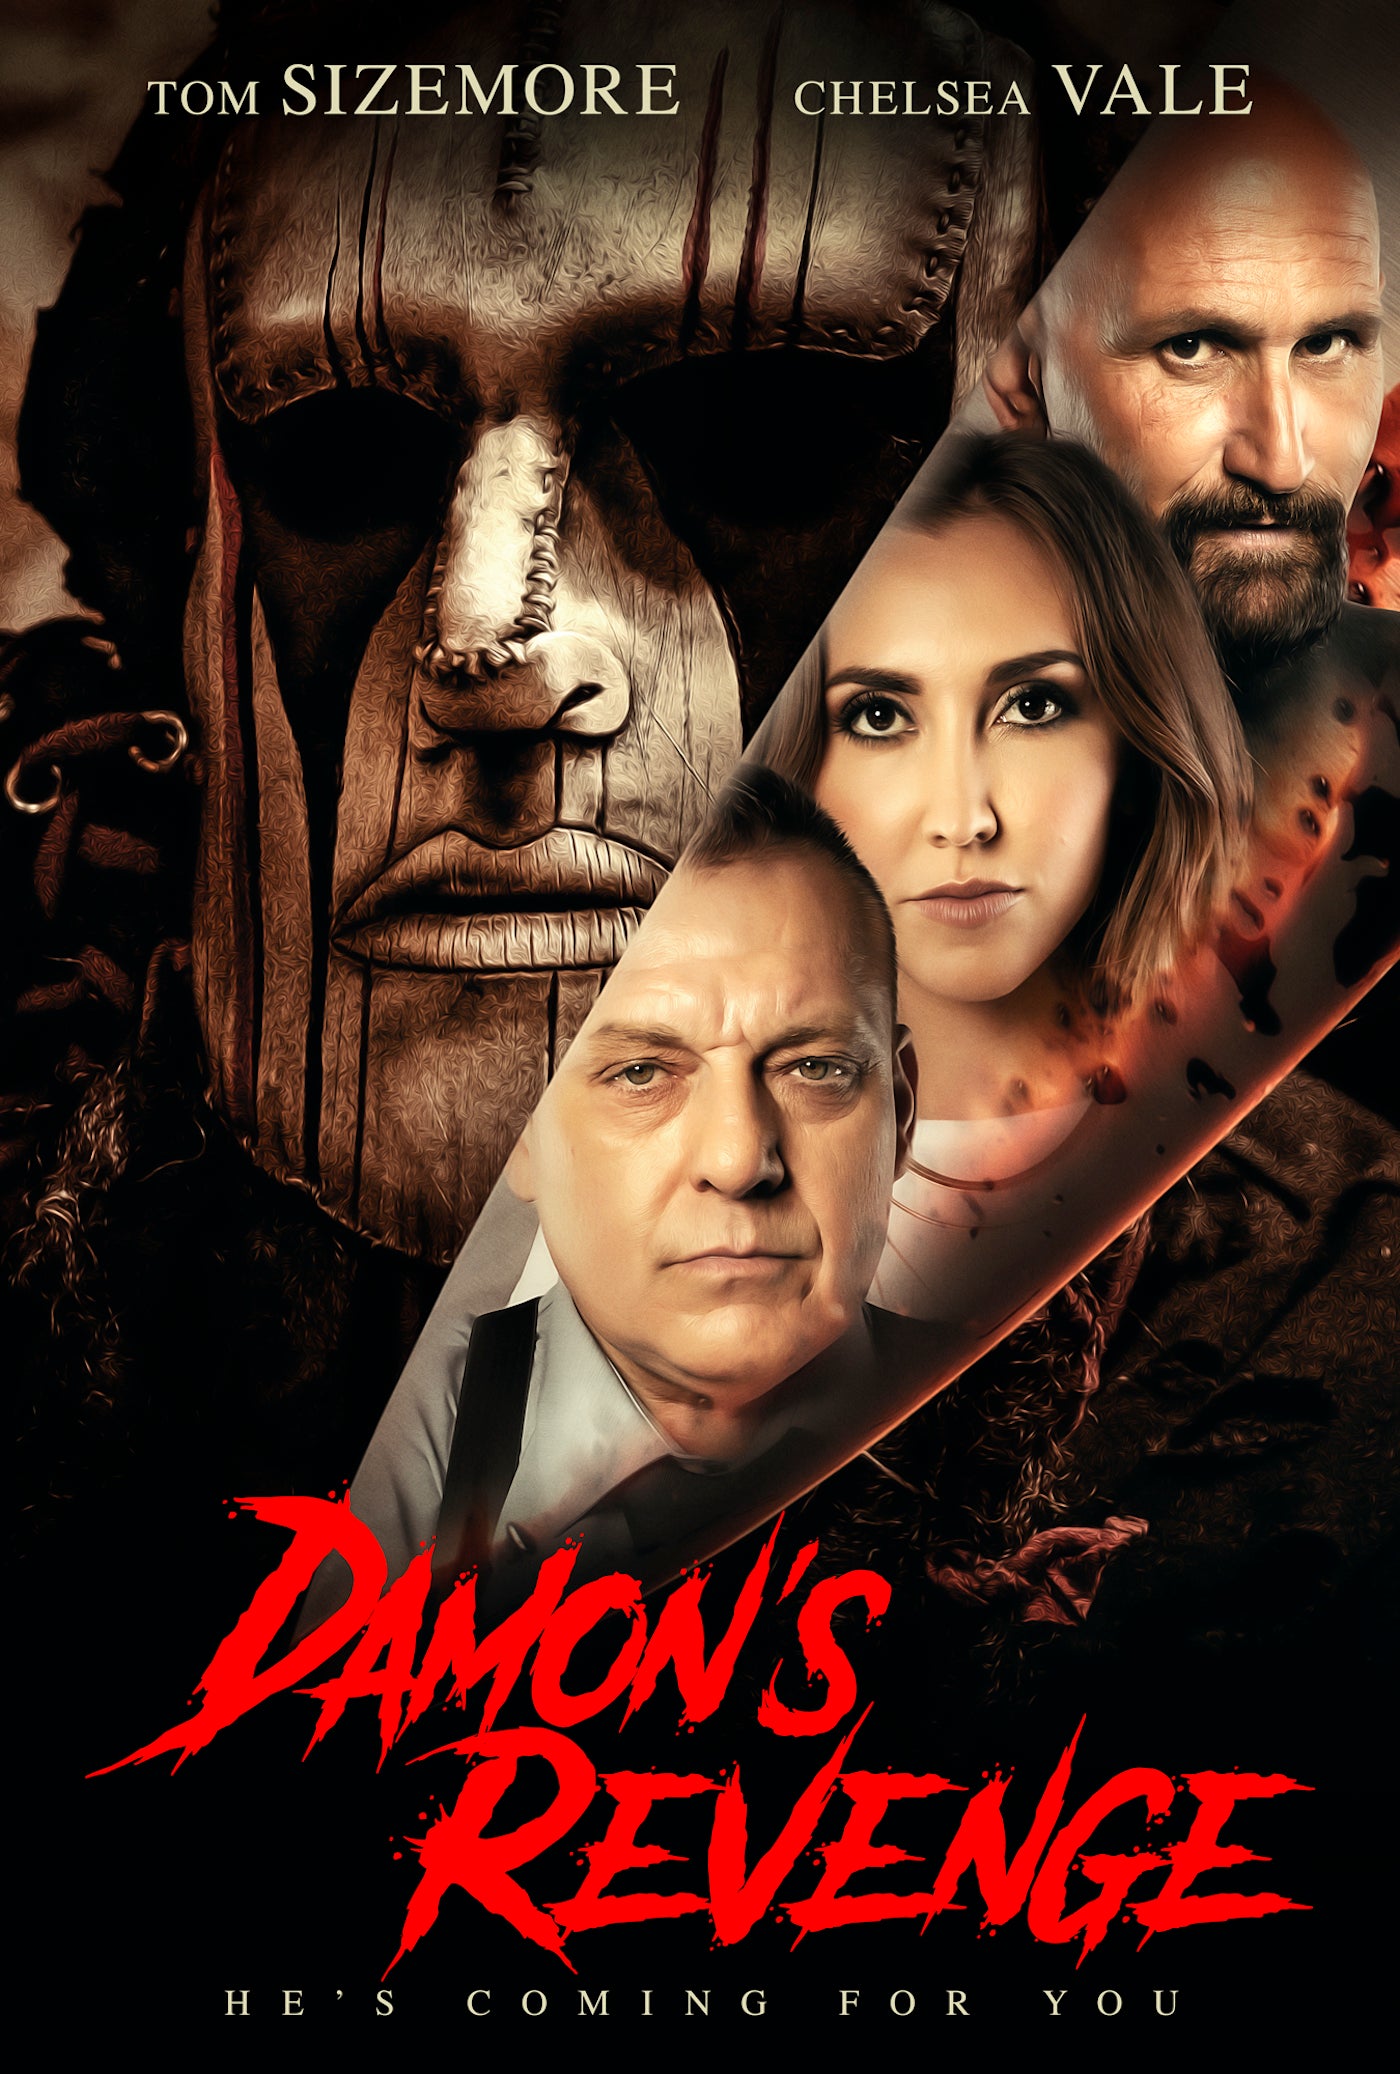 DAMON'S REVENGE DVD